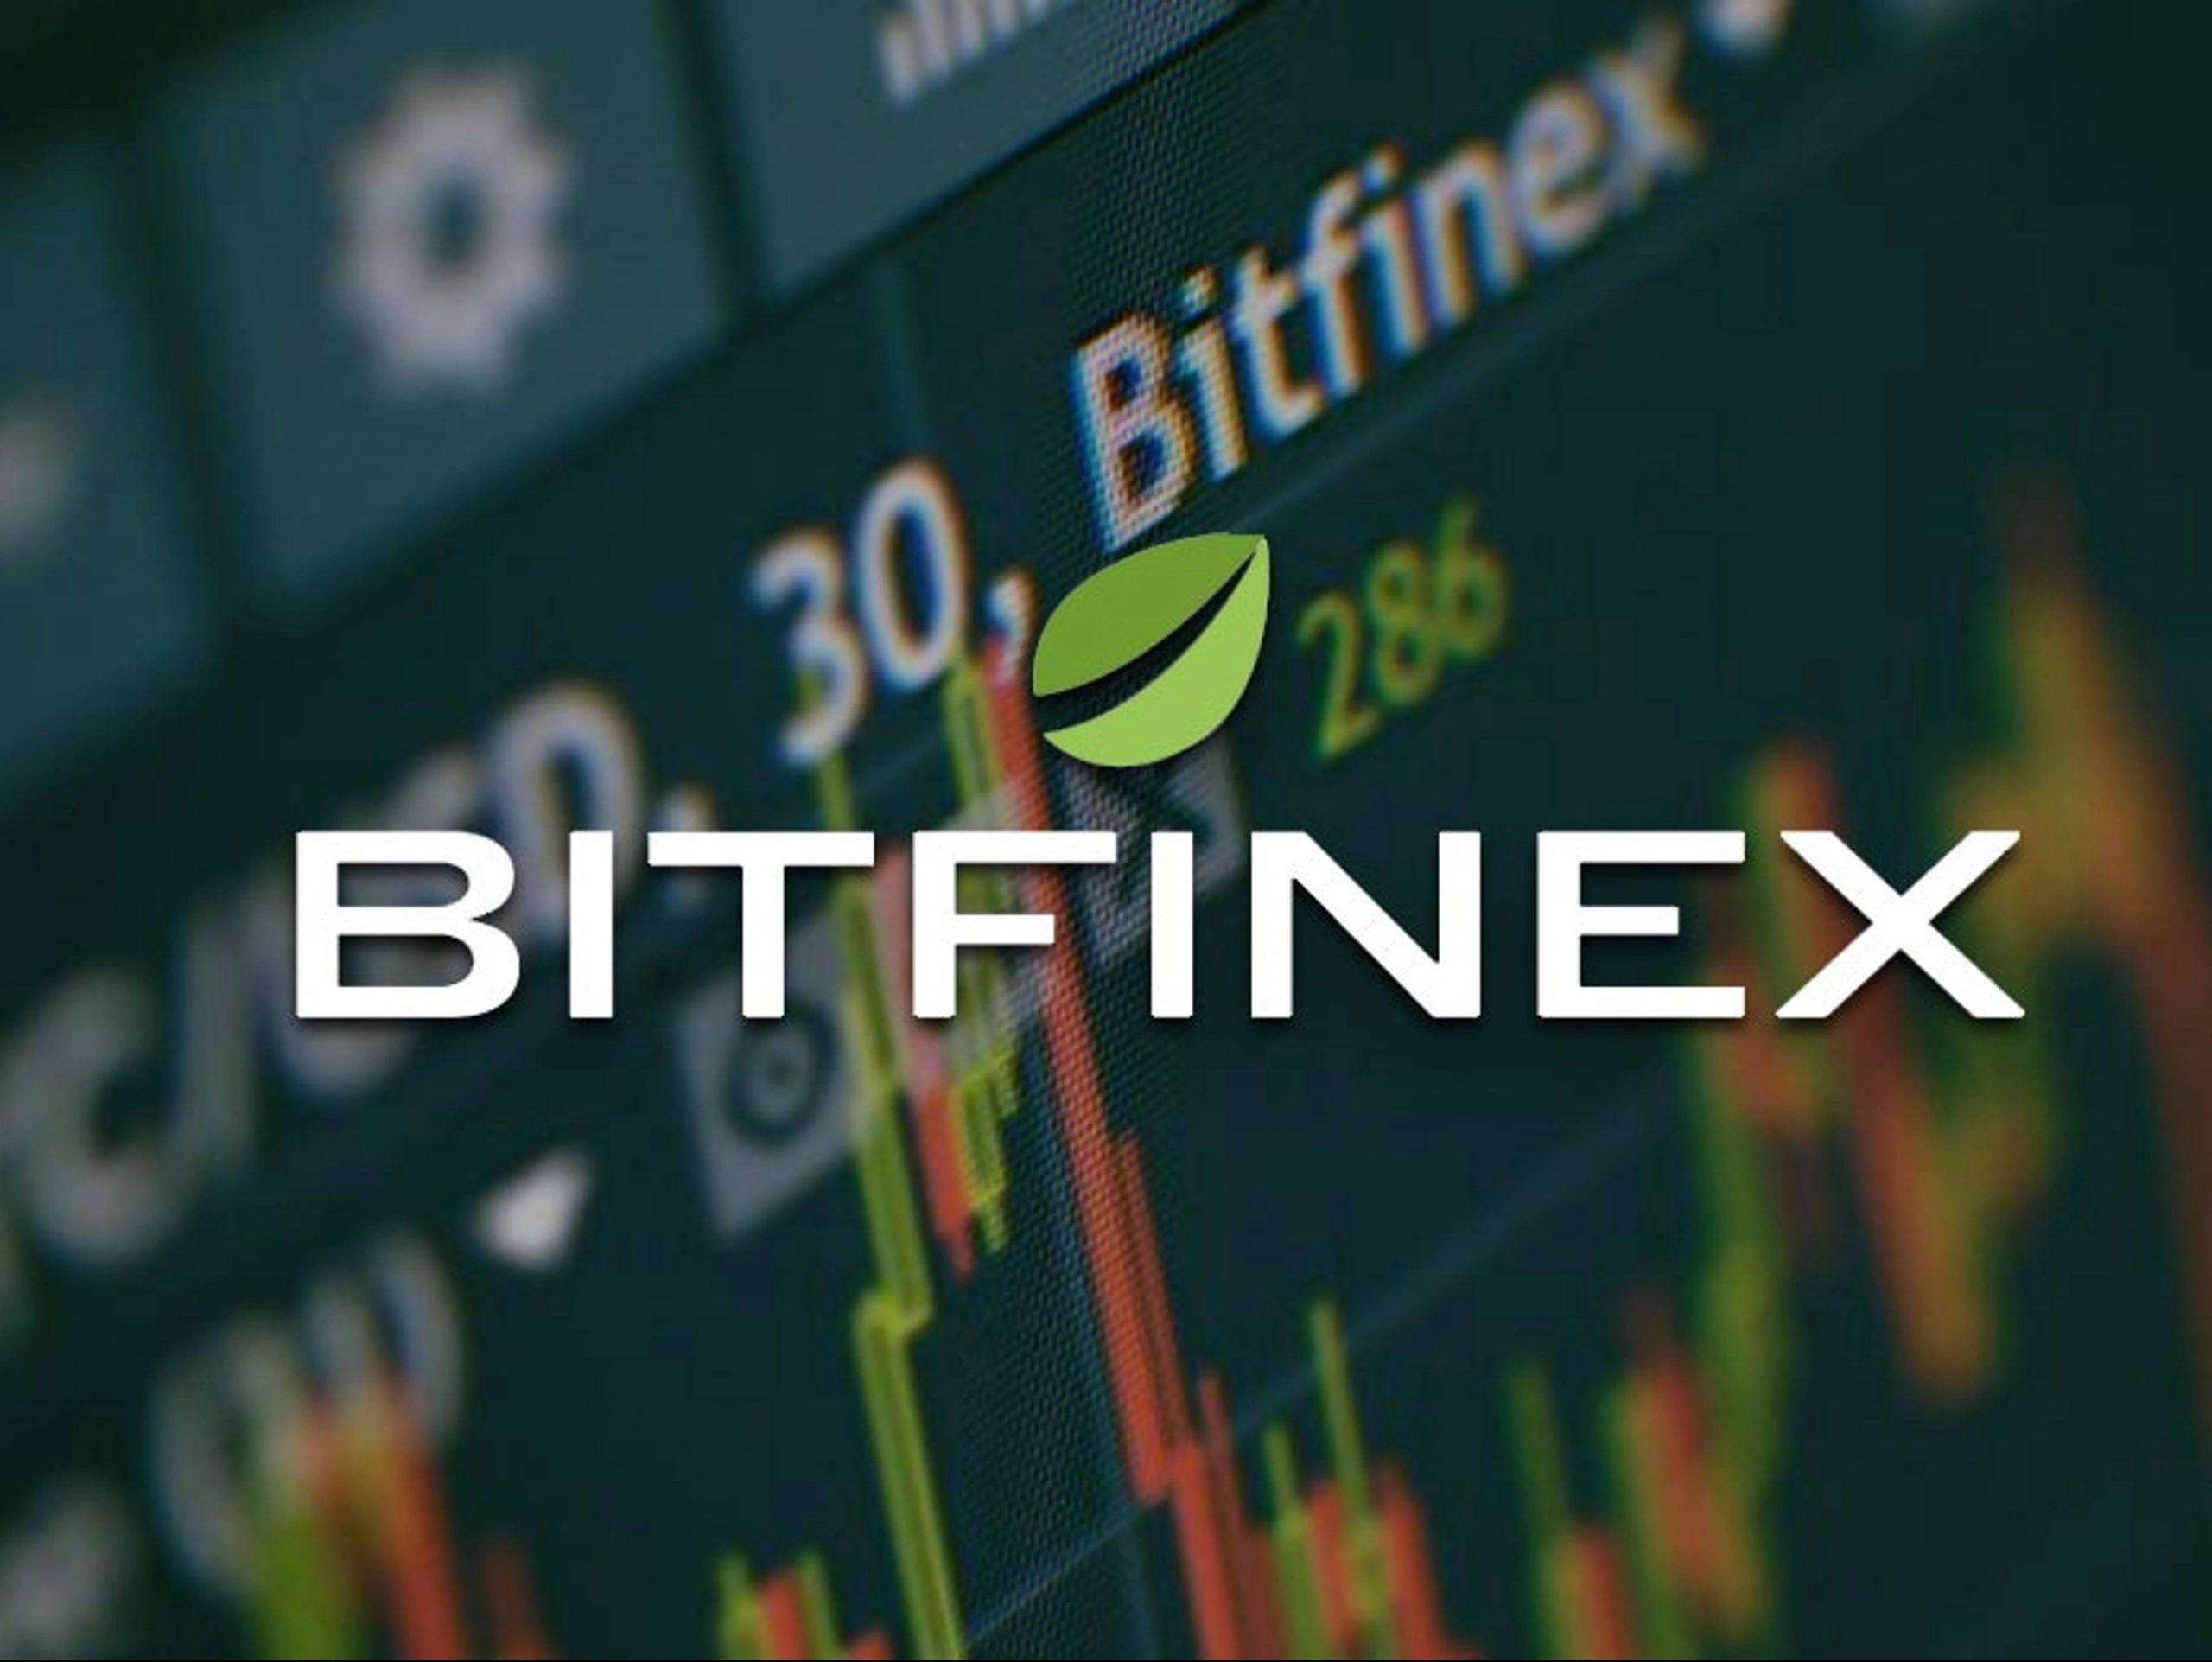 هيئة السلوك المالي FCA بيتفينكس Bitfinex قد تقوم بالترويج للخدمات المالية دون إذننا